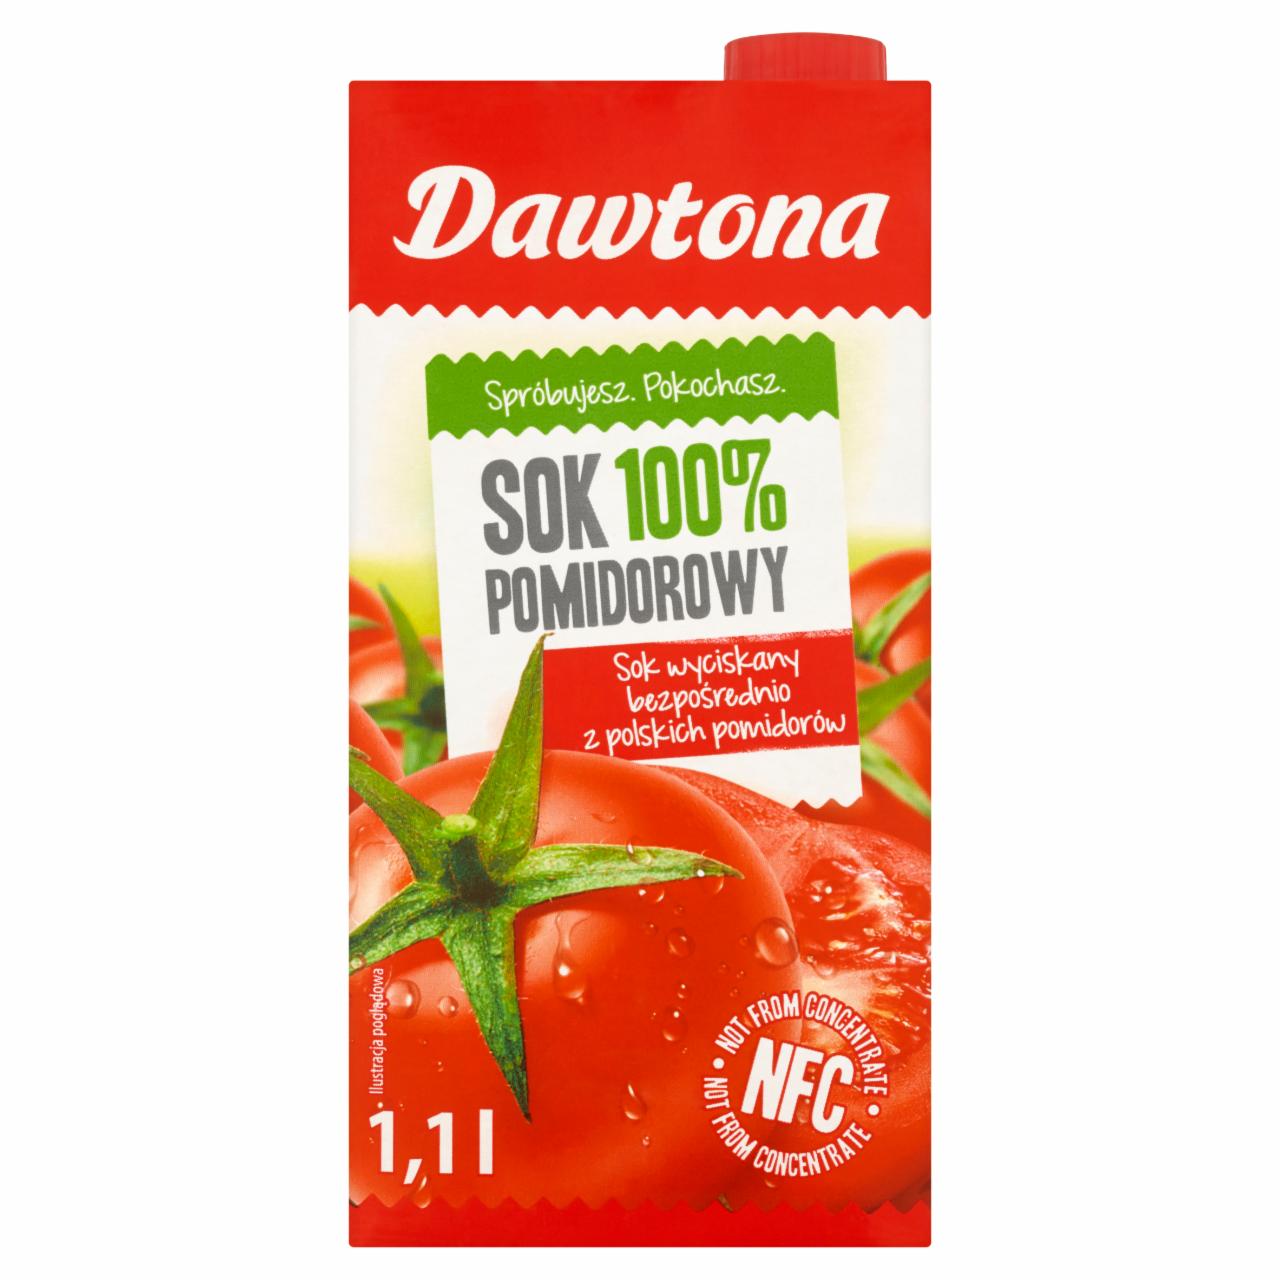 Zdjęcia - Dawtona Sok 100% pomidorowy 1,1 l